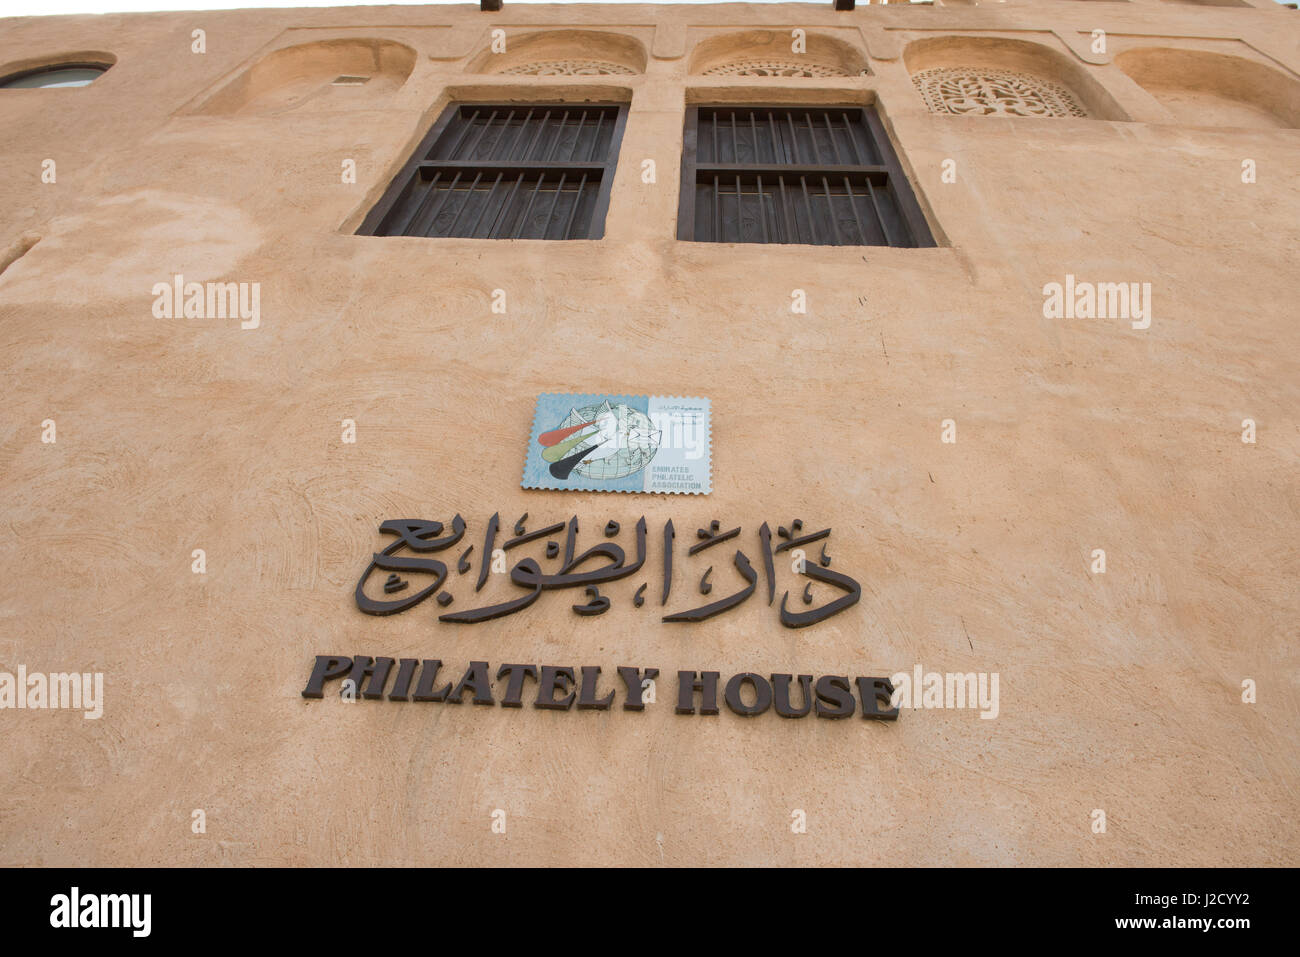 Emirats arabes unis, dubai. al bastakiya trimestre, célèbre pour ses maisons de la tour éolienne historique (datant de la fin des années 1800) conçu pour maintenir la maison au frais. philatélie chambre. Tailles disponibles (grand format) Banque D'Images